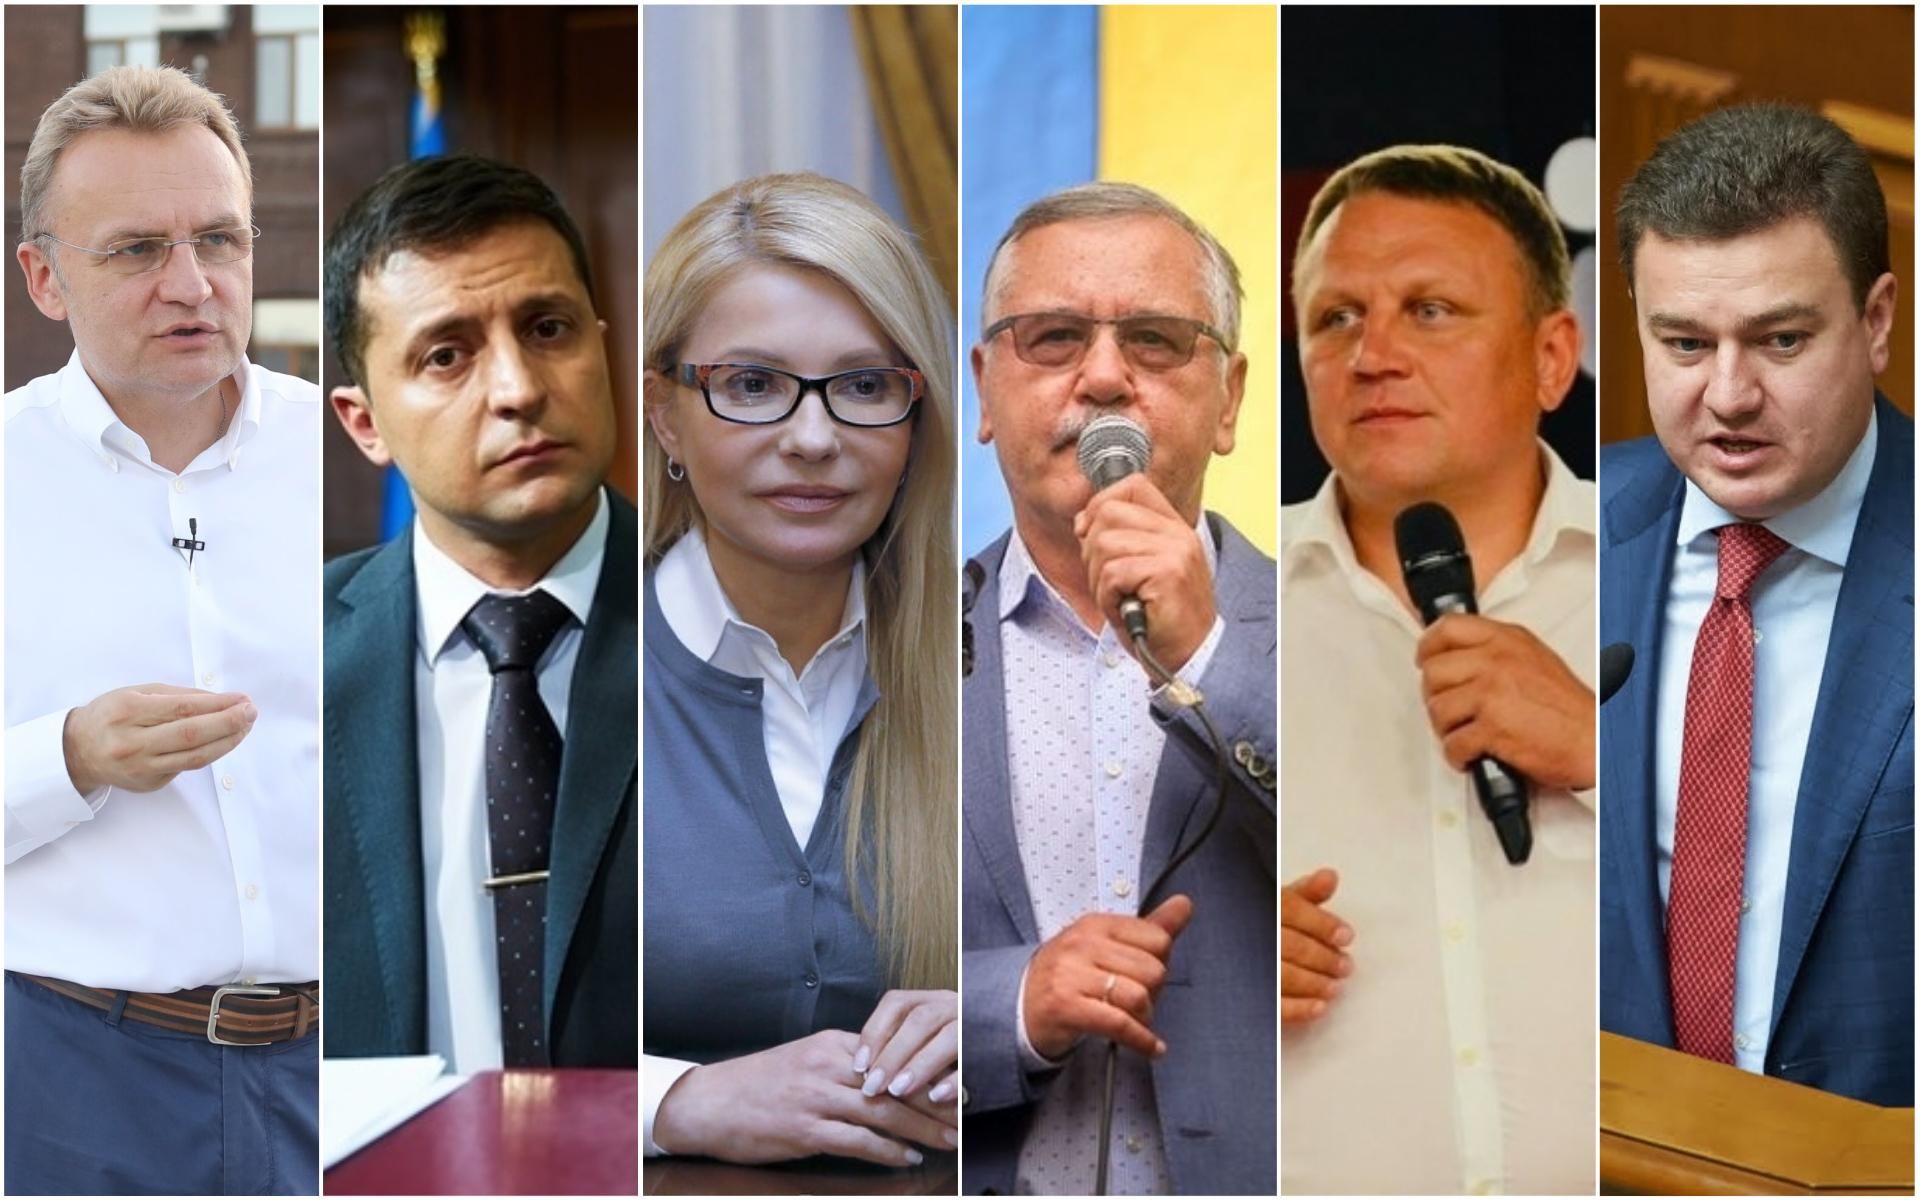 Меморандум про вибори 2019 підписали кандидати в президенти України 2019